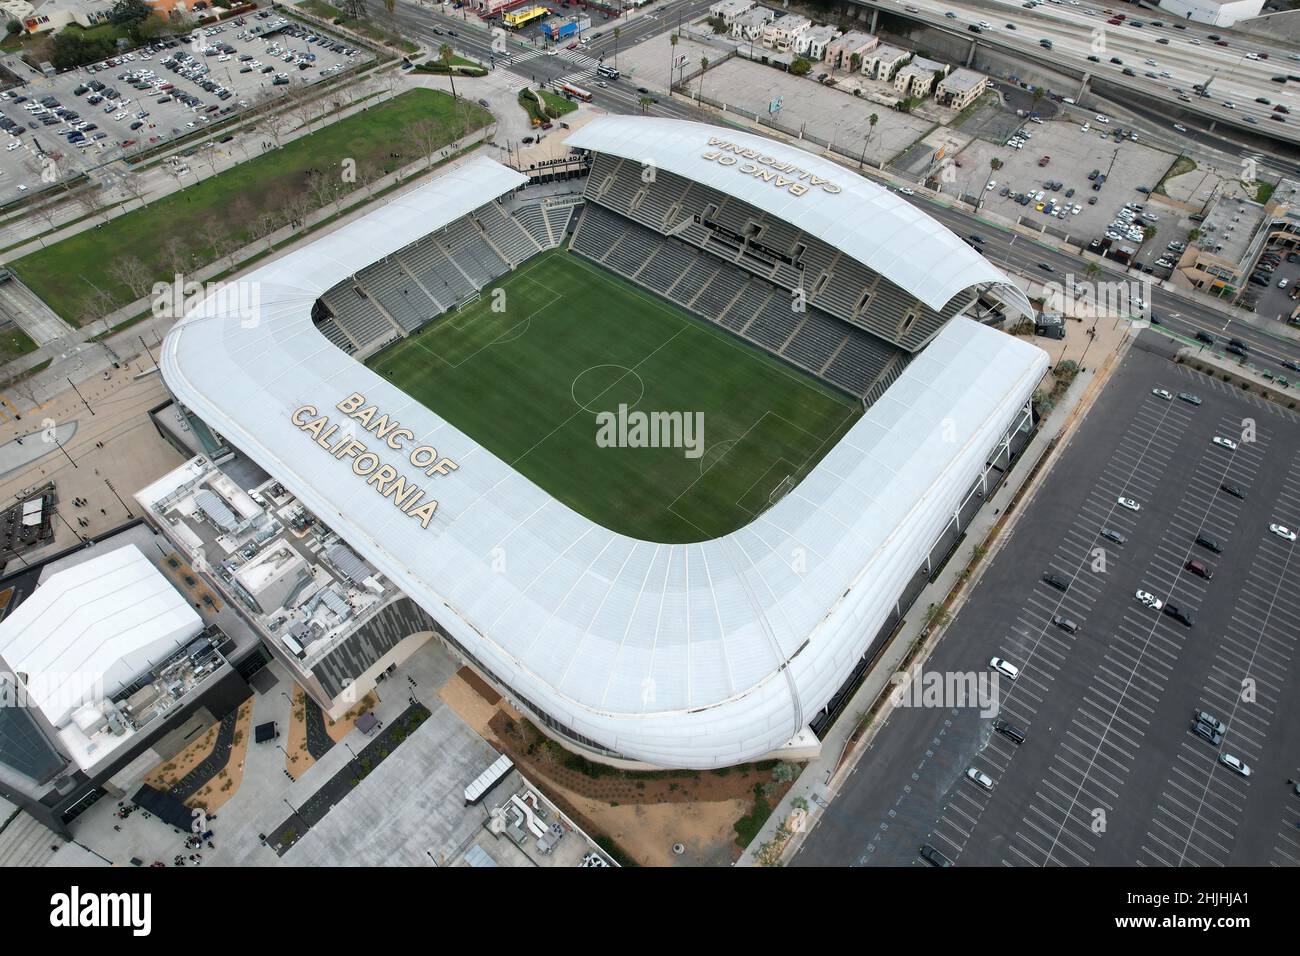 Eine Luftaufnahme des Banc of California Stadium, der Heimat der LAFC-Fußballmannschaft, Samstag, 29. Januar 2022, in Los Angeles. Stockfoto